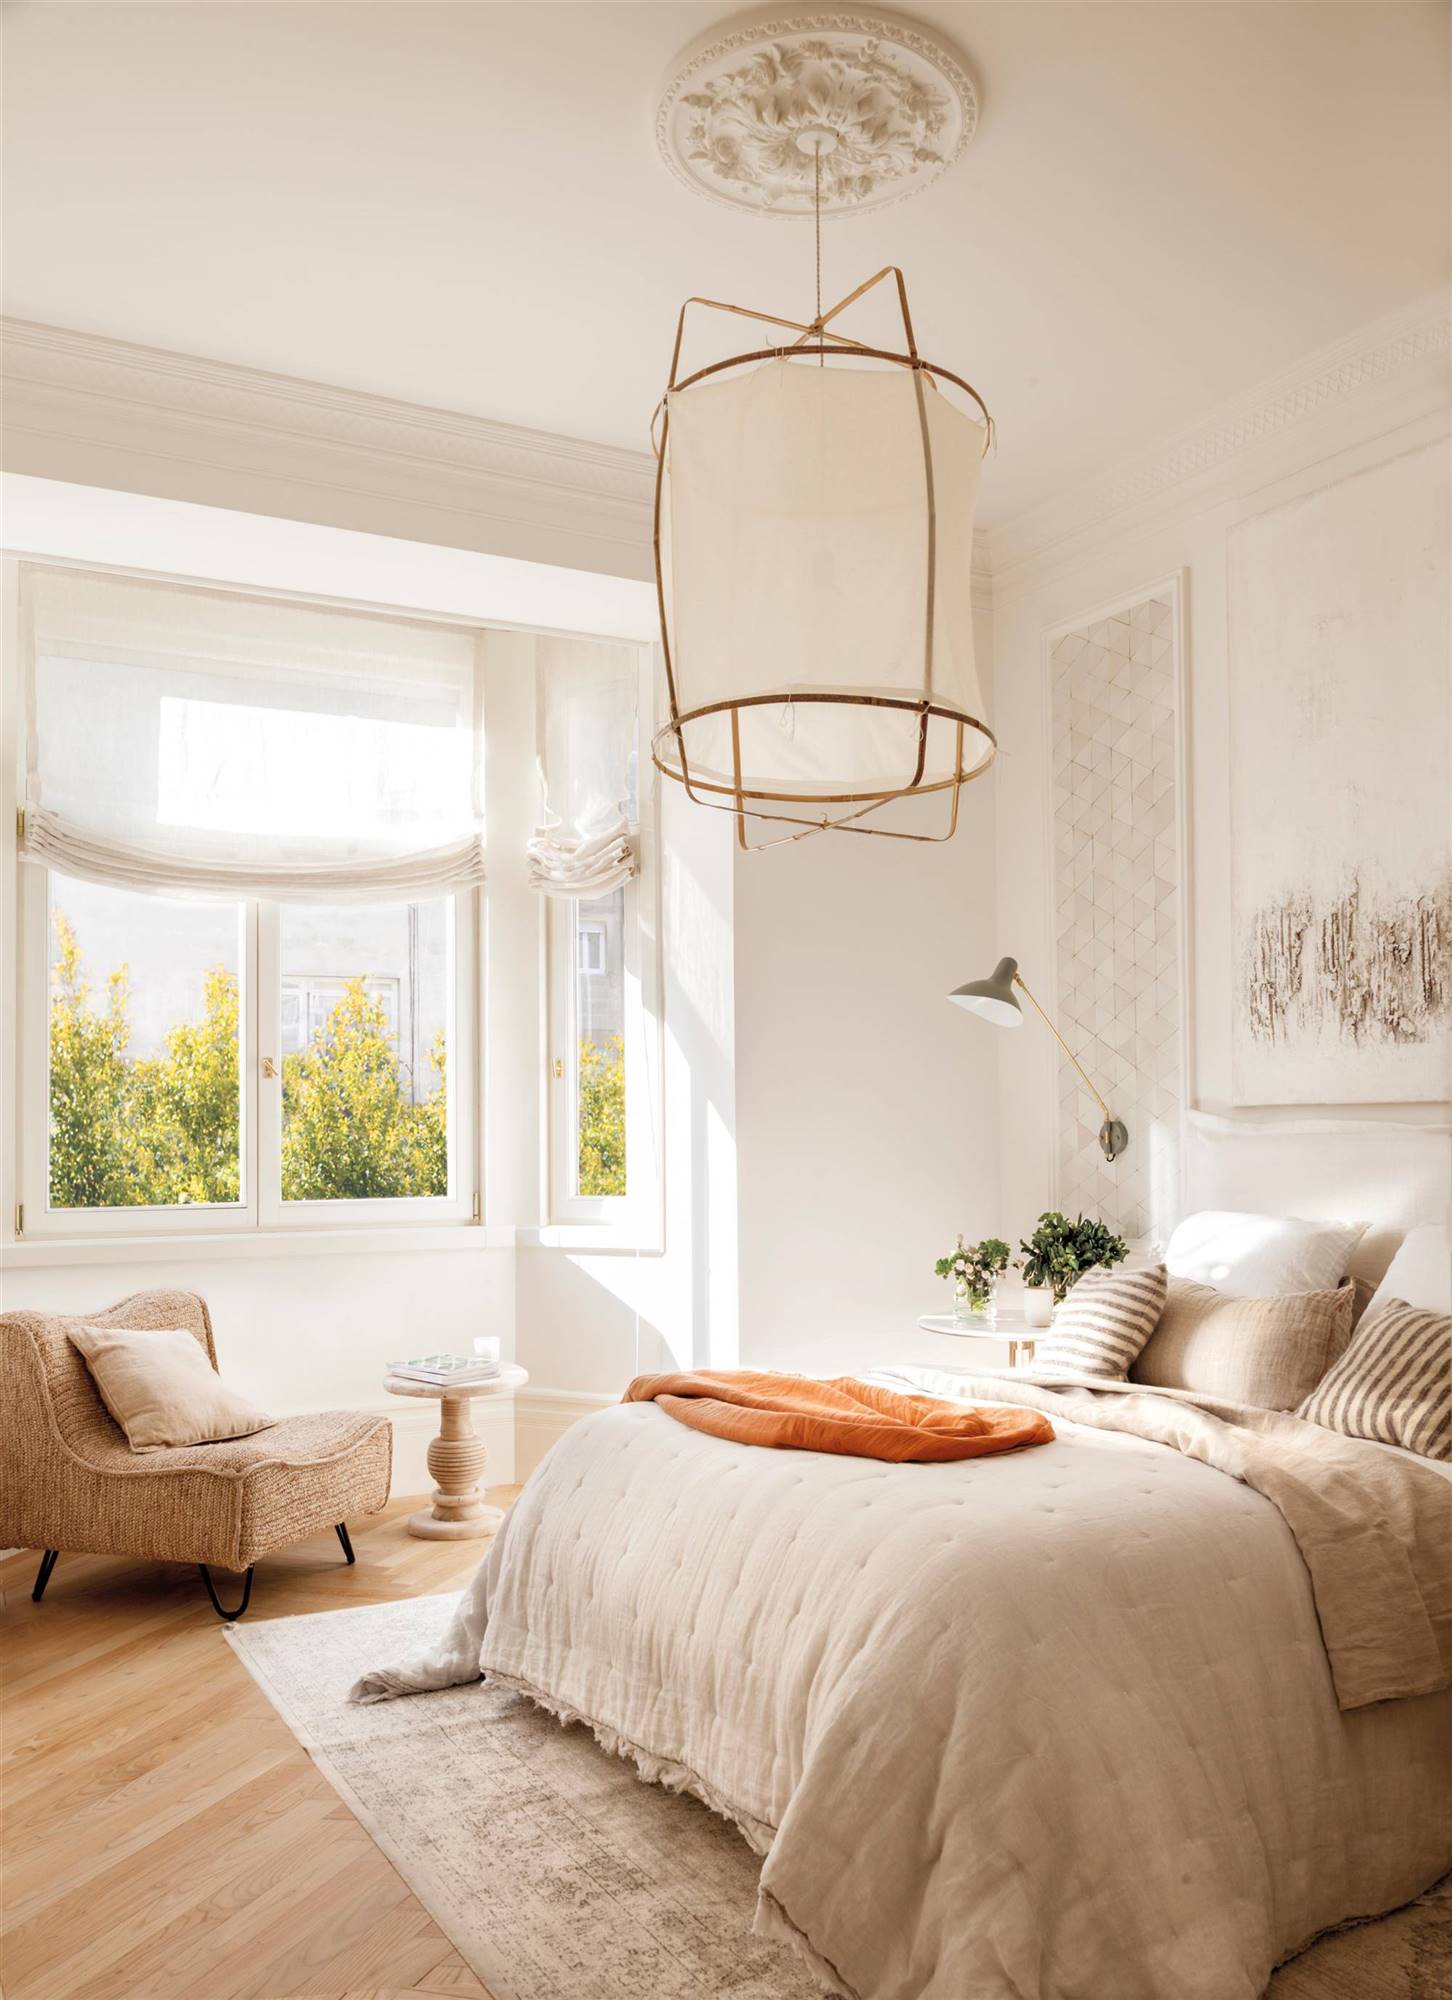 Dormitorio clásico blanco con gran lámpara, molduras y una butaca. 